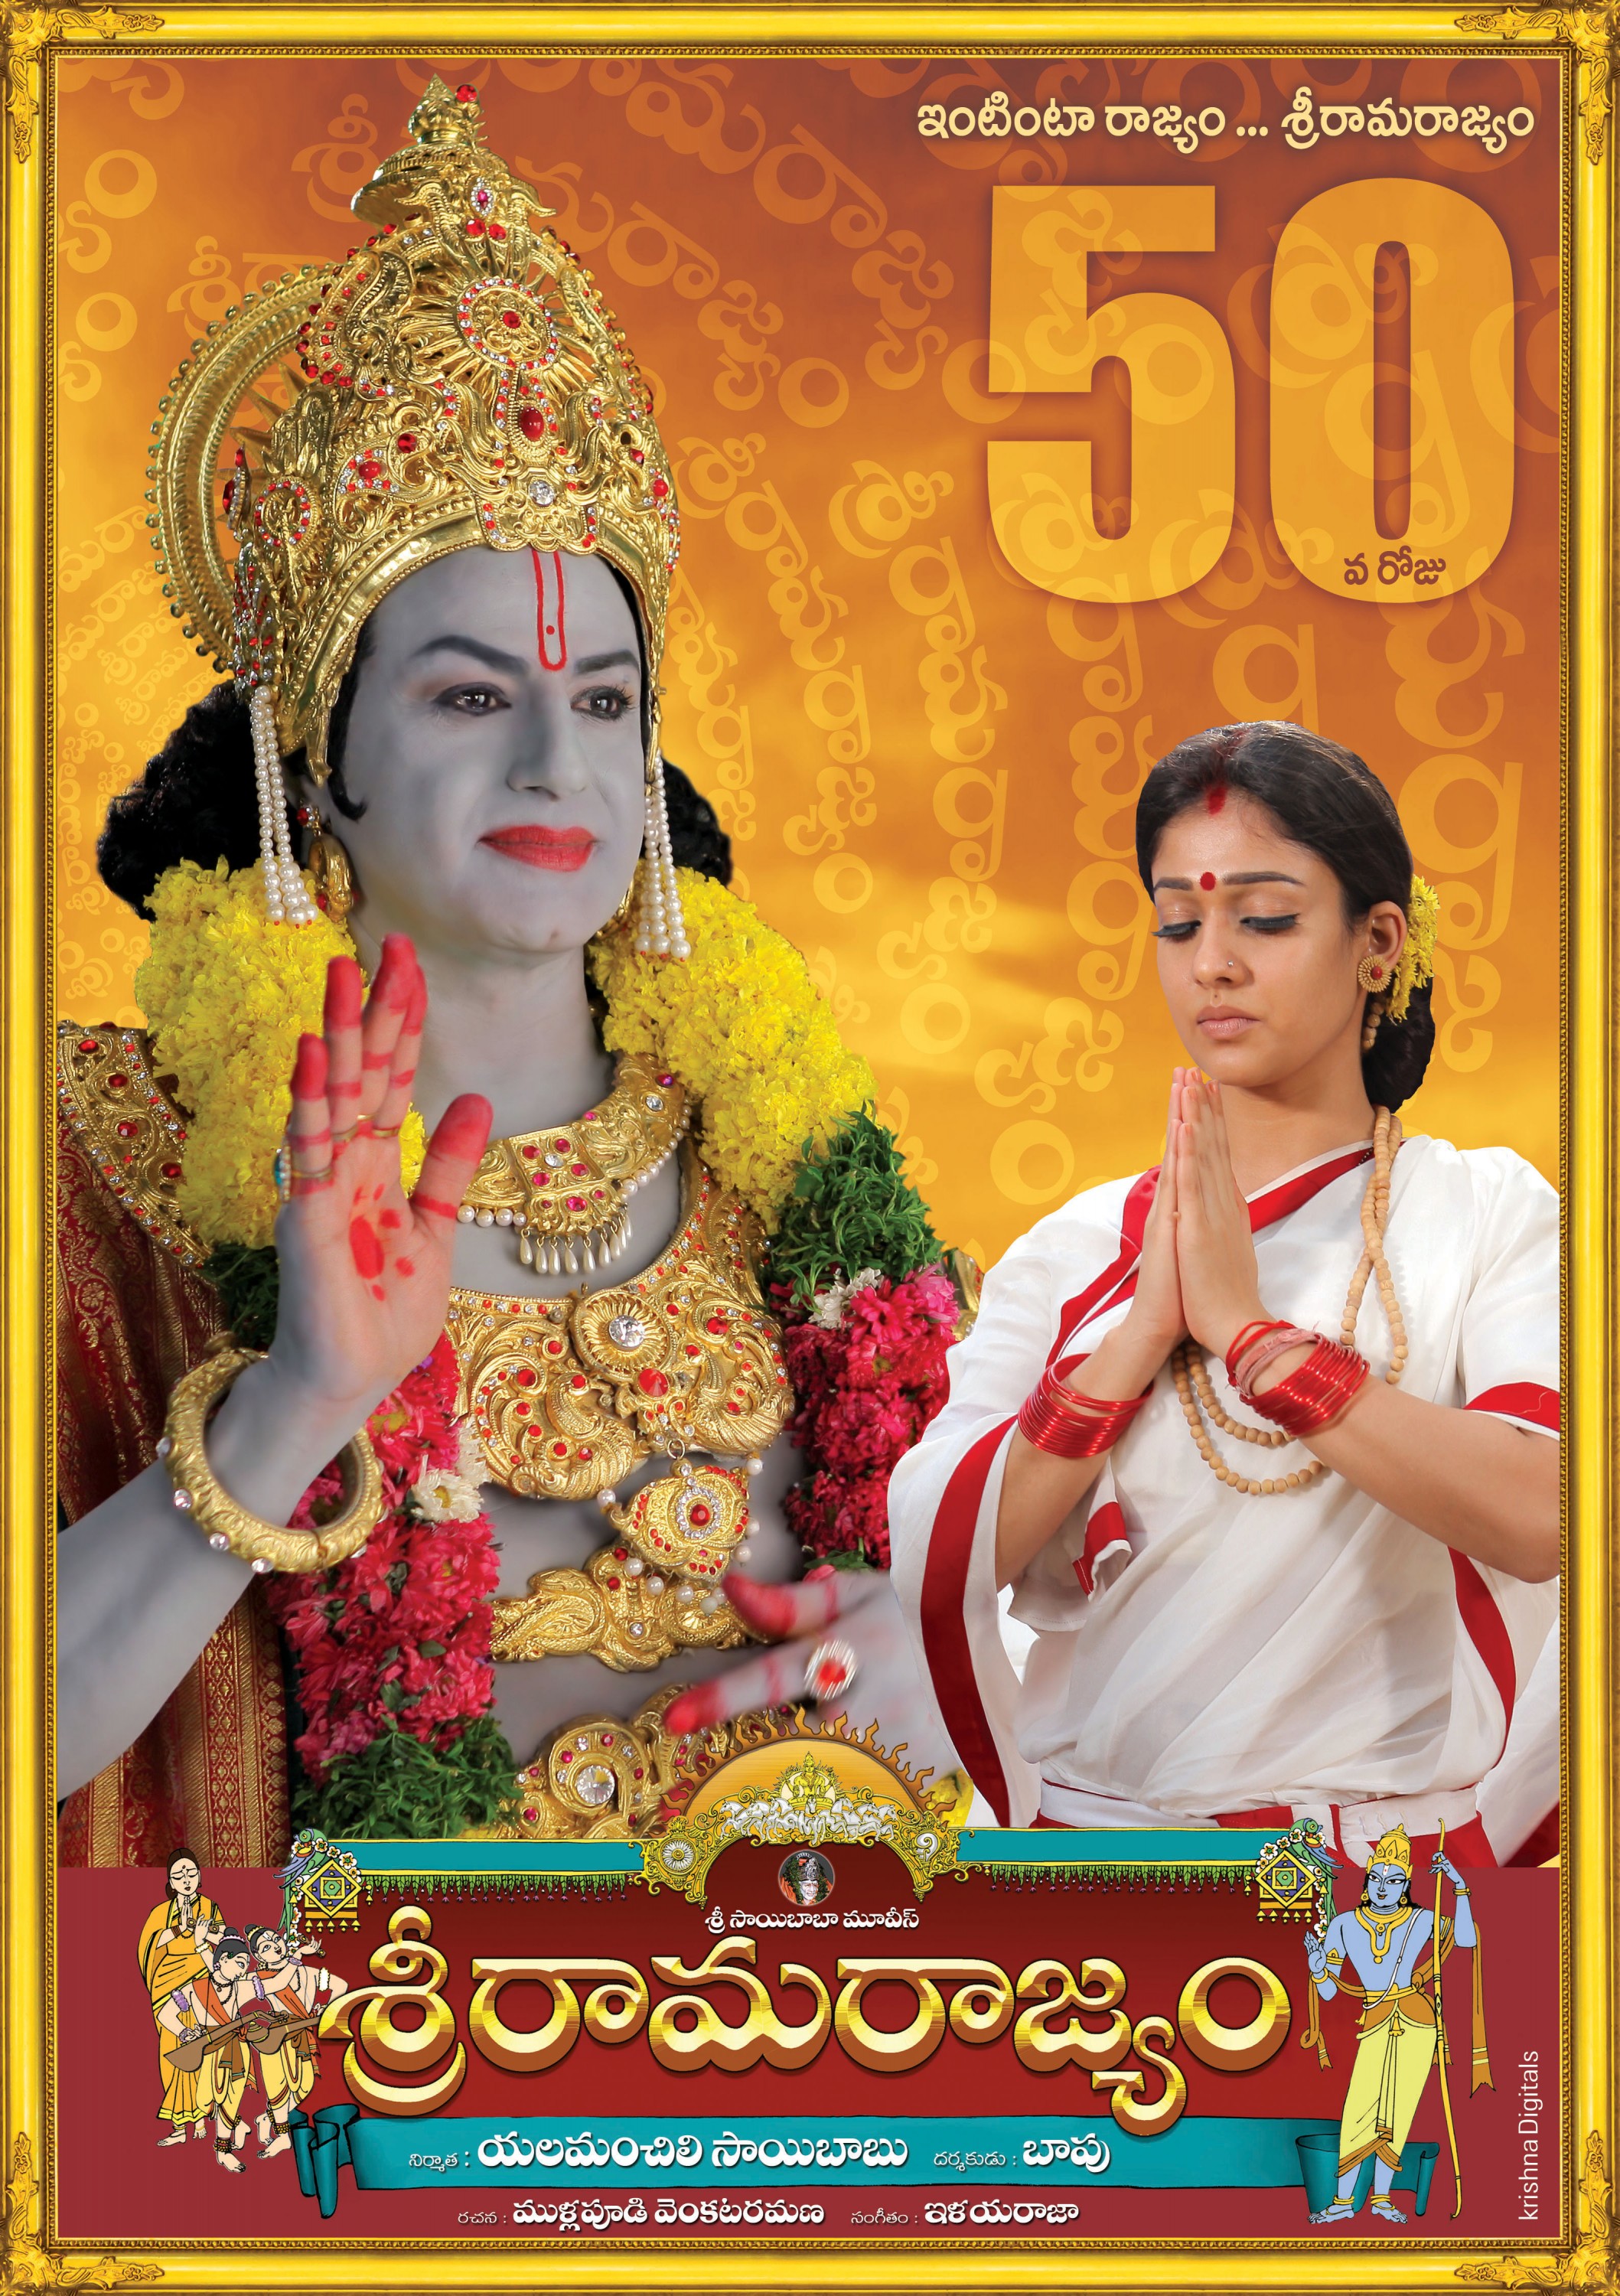 Mega Sized Movie Poster Image for Sri Rama Rajyam (#9 of 10)